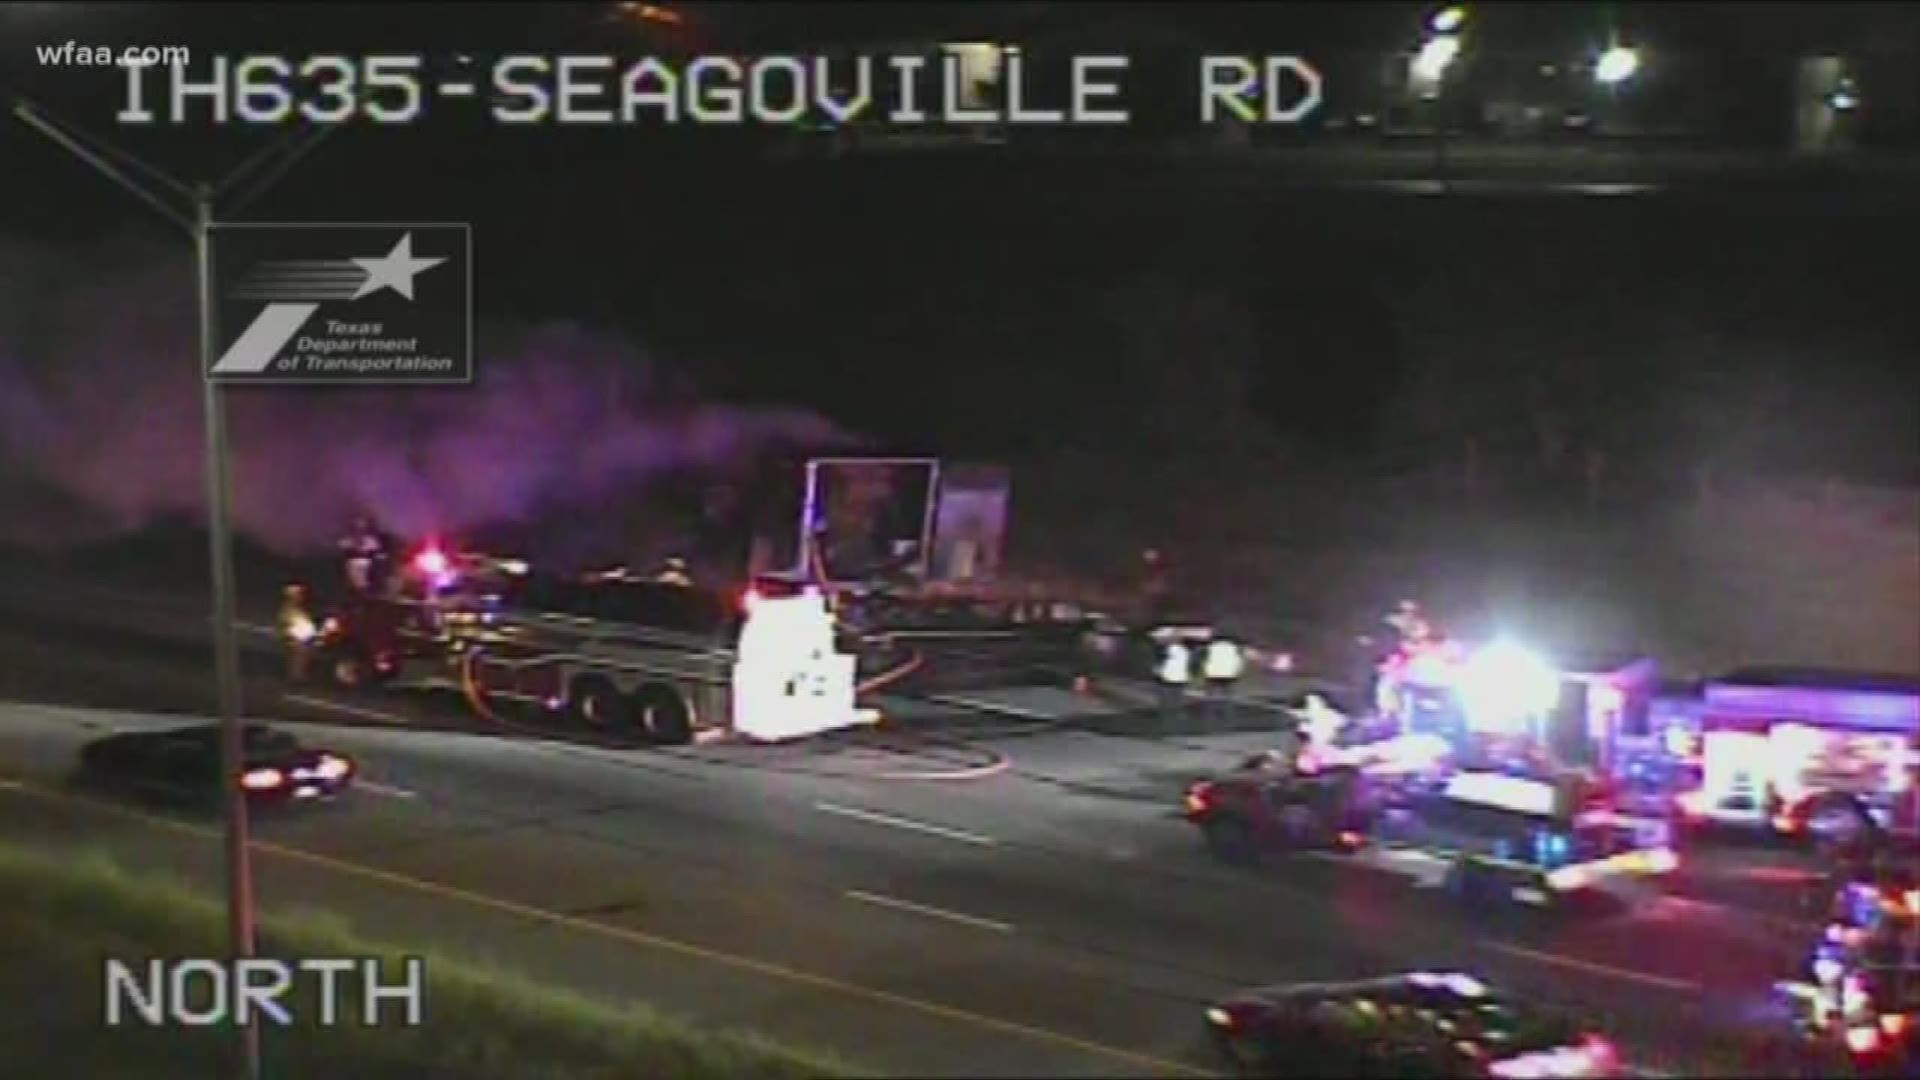 Semi caught fire in crash on I-635 at Seagoville